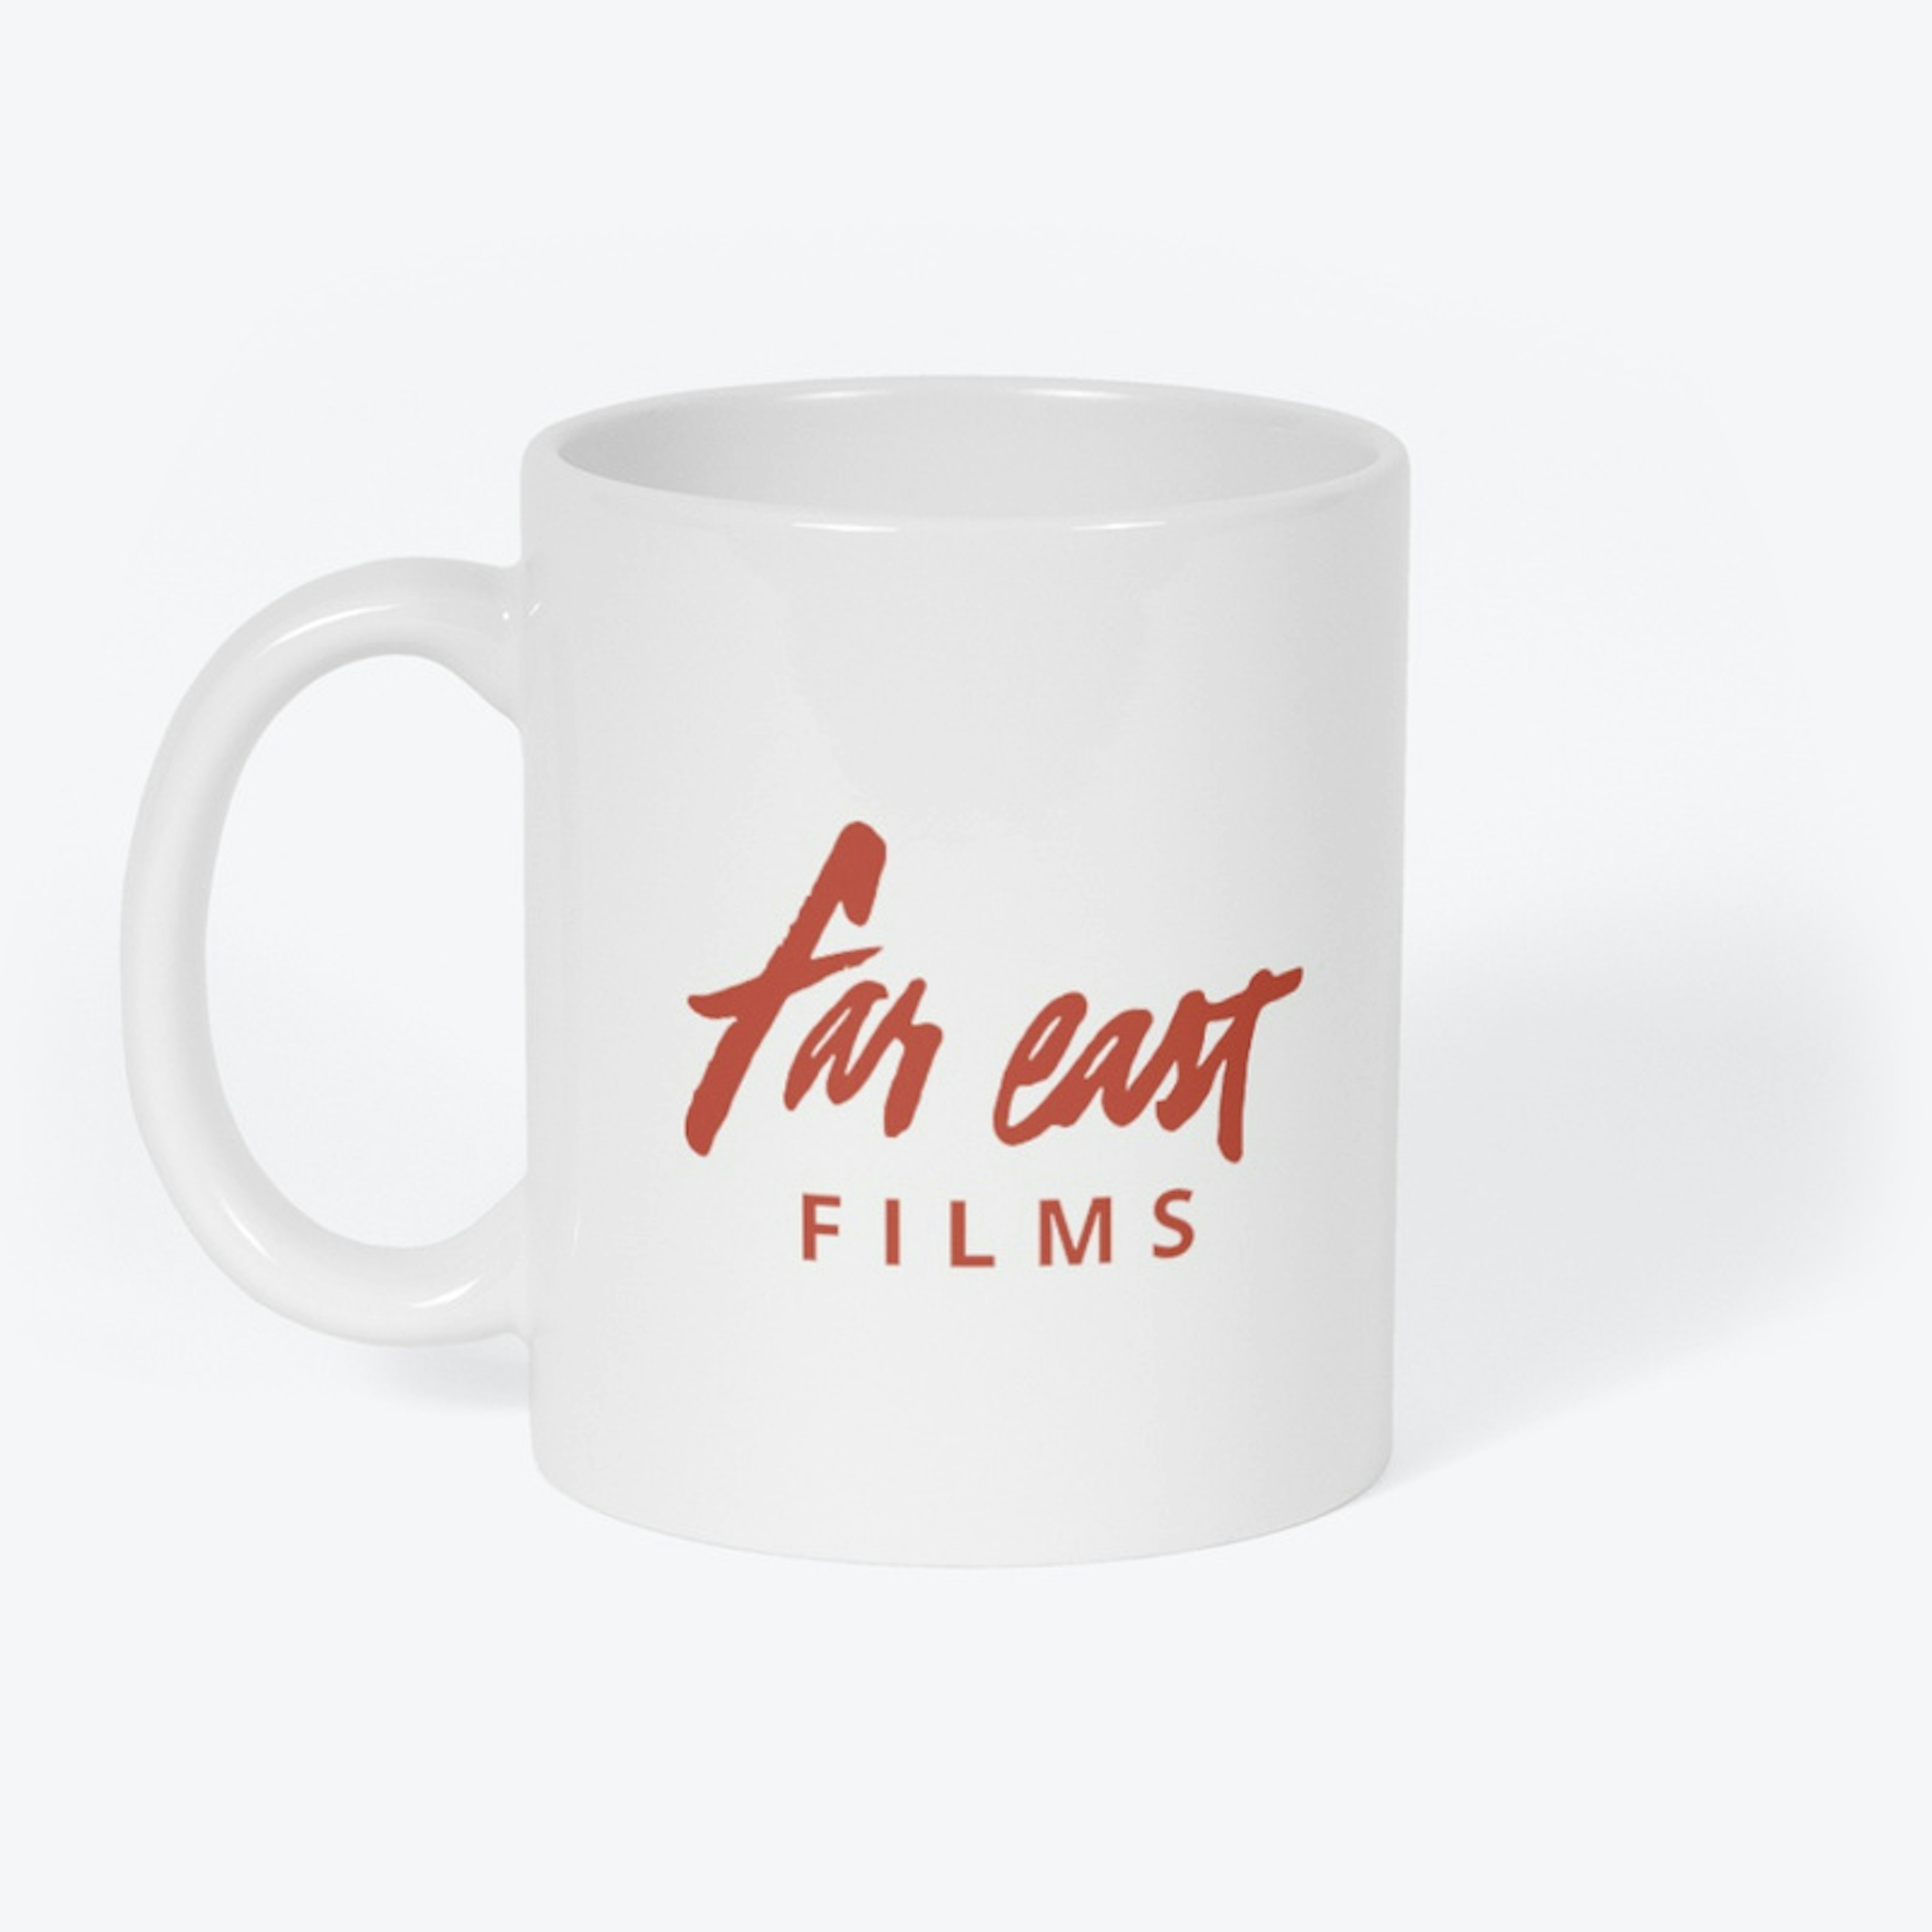 Far East Films mug (White)